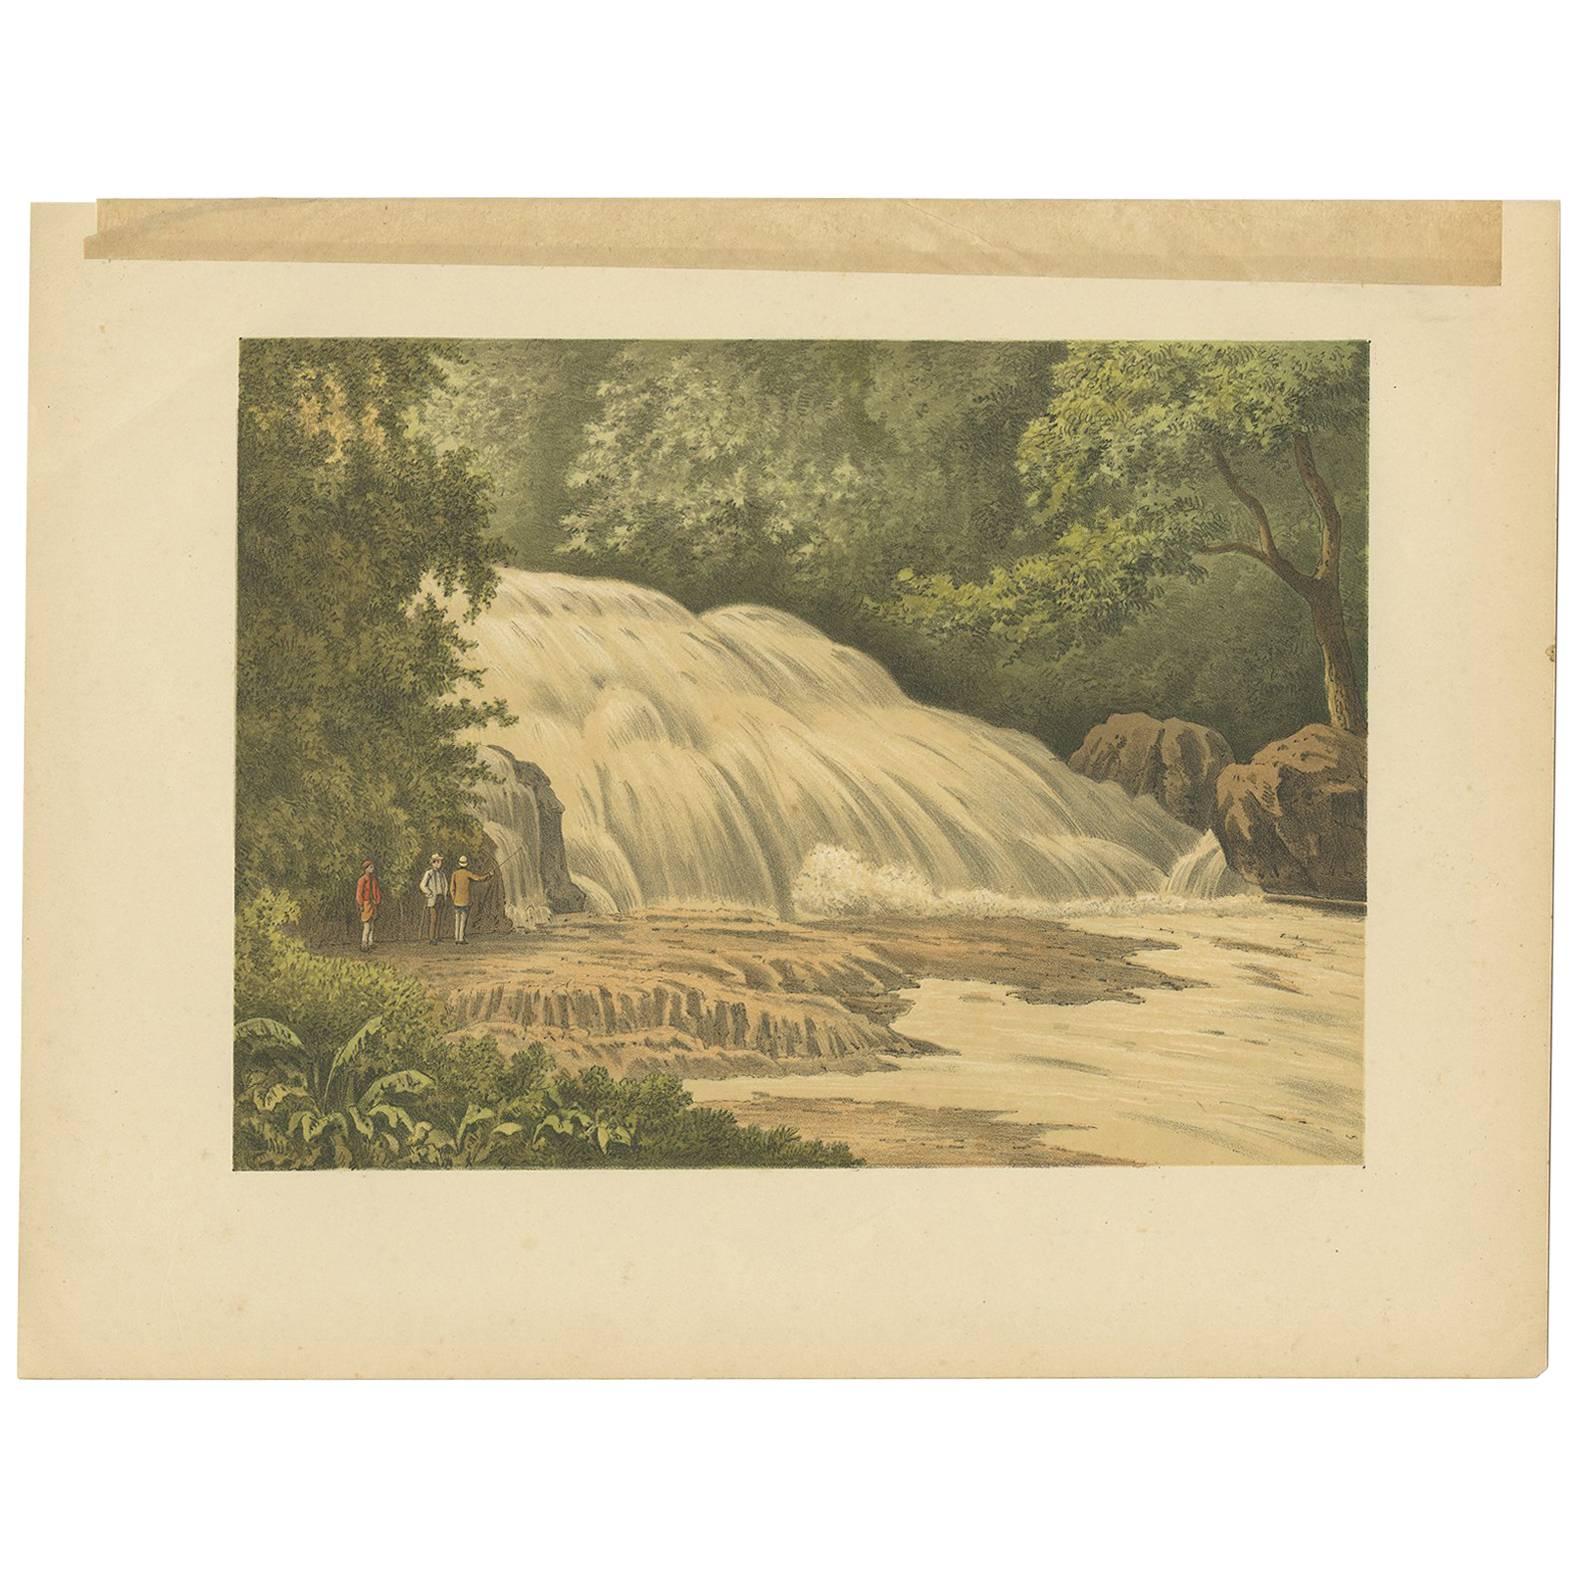 Antiker Druck des Bantimurung-Wasserfalls von M.T.H. Perelaer, 1888